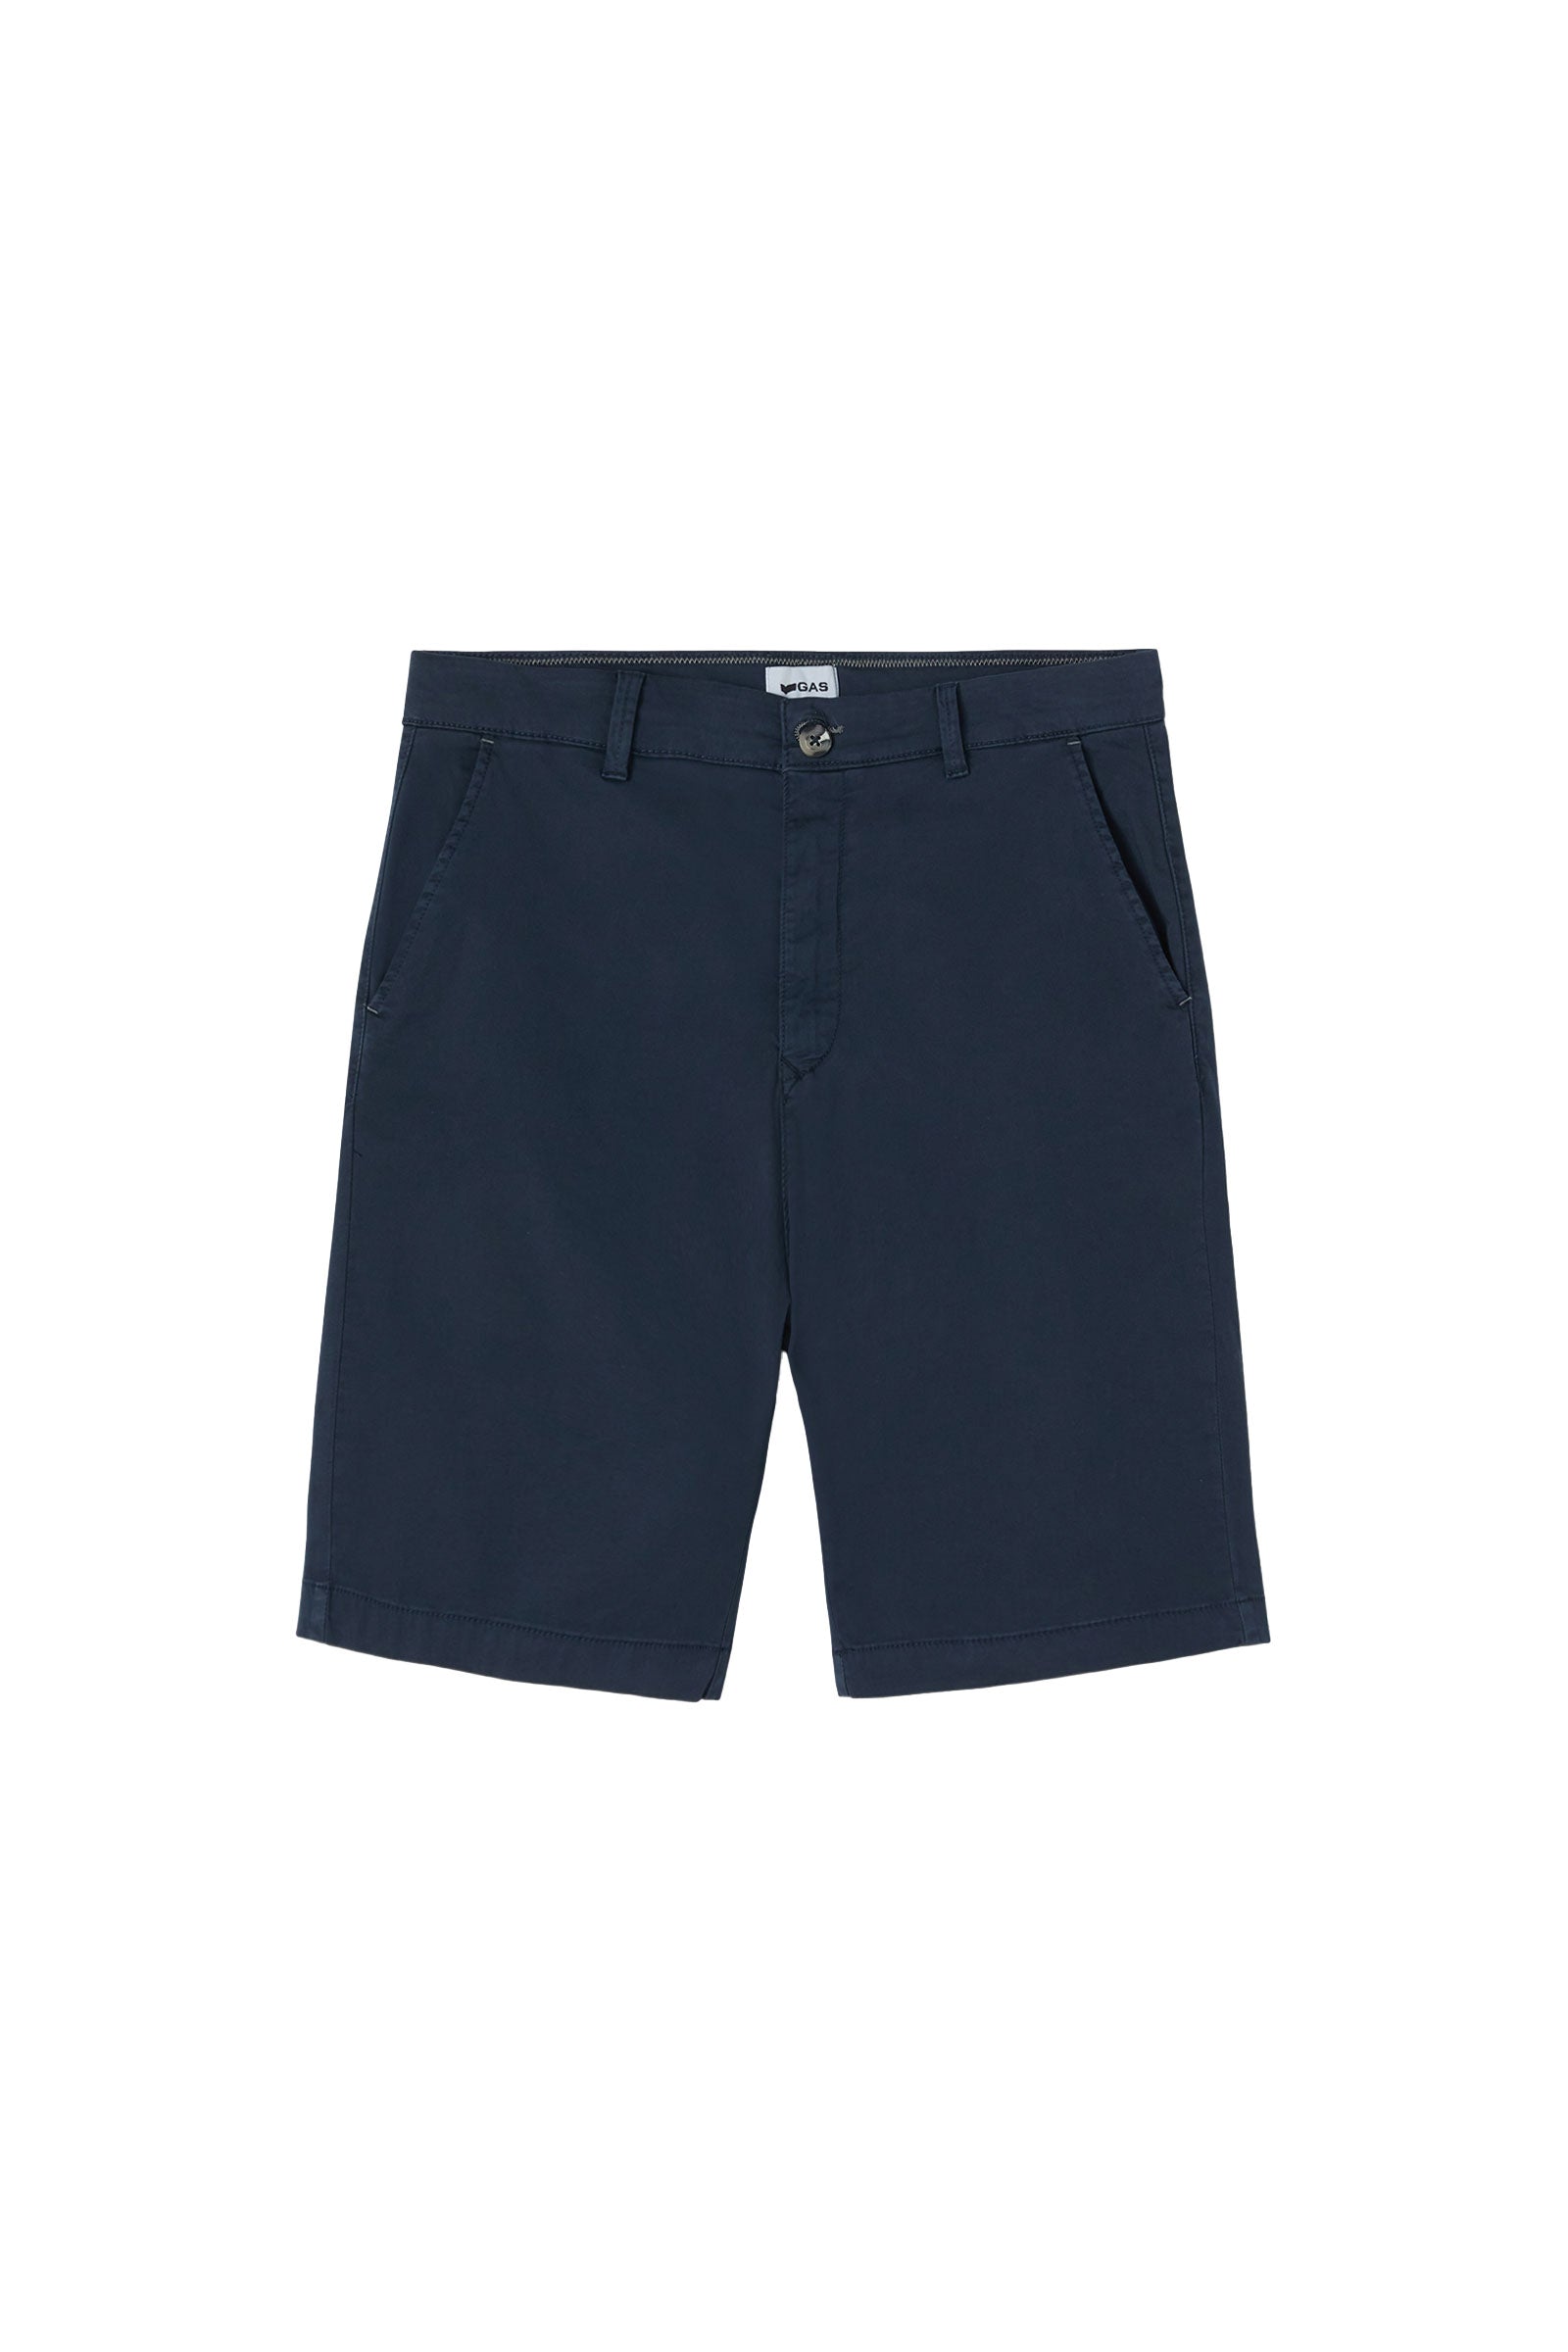 N.Sadeck Short Shorts in Navy Blue Shorts GAS   